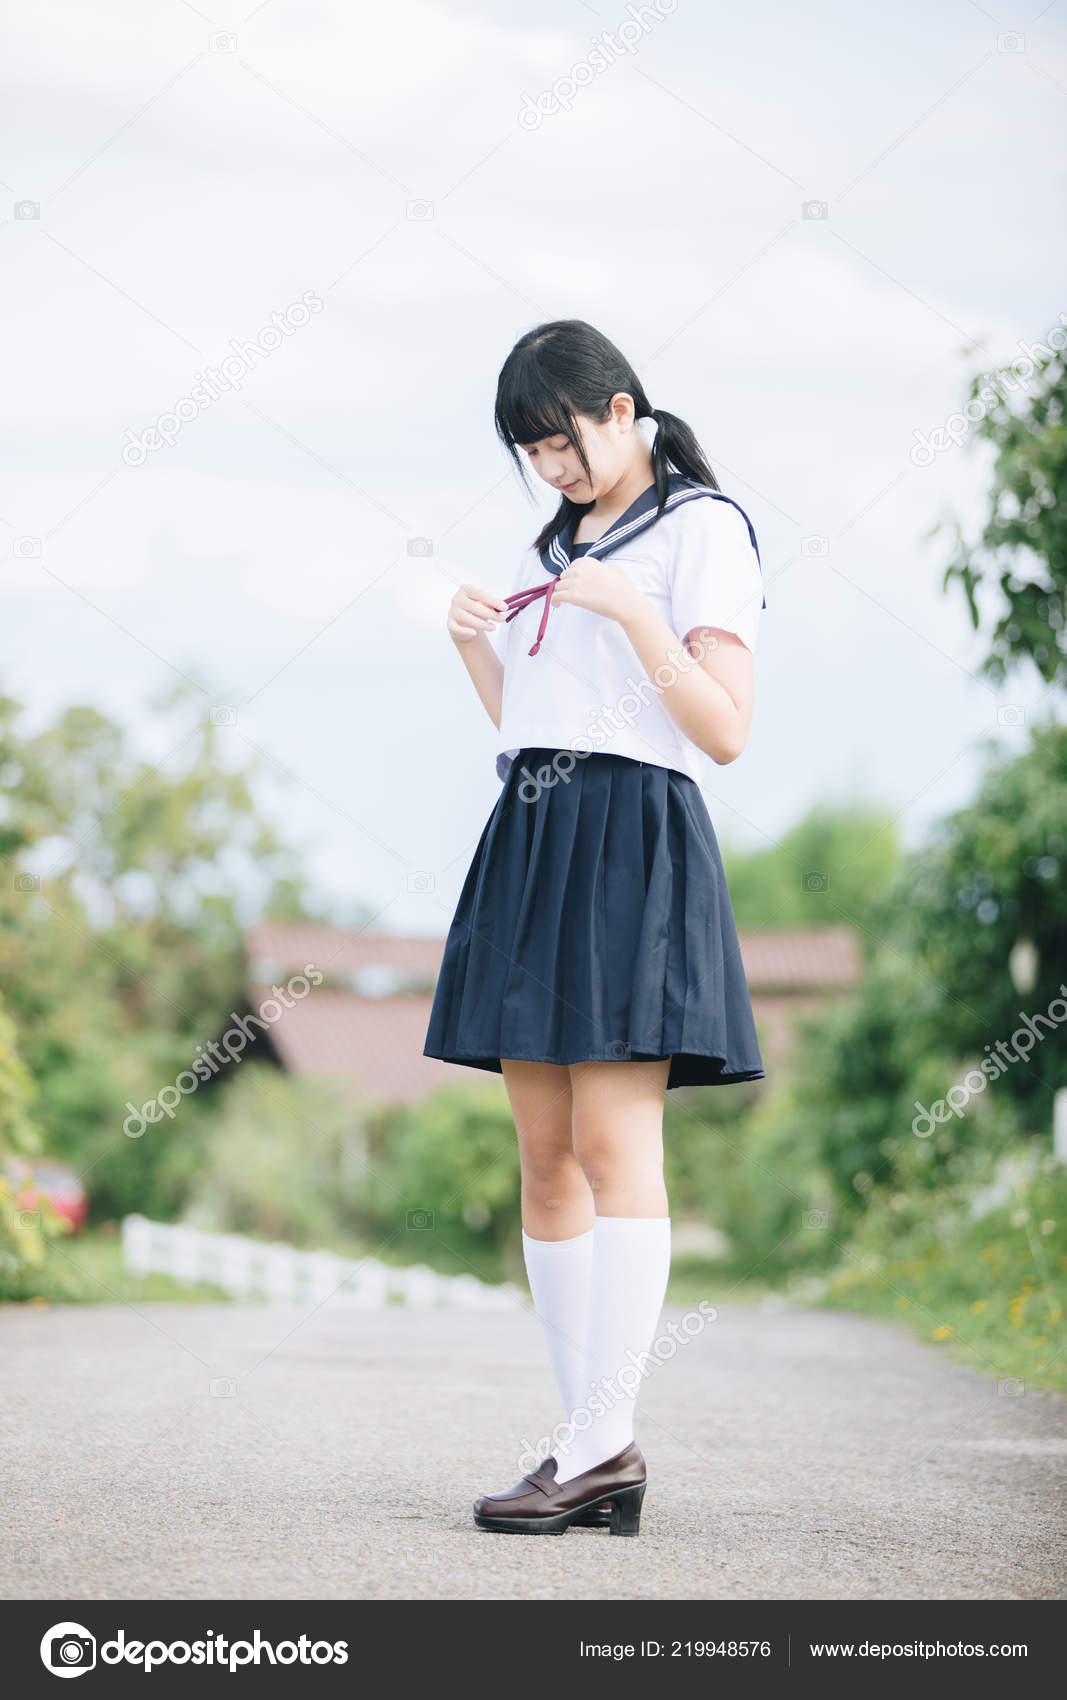 japanese school girl outdoor